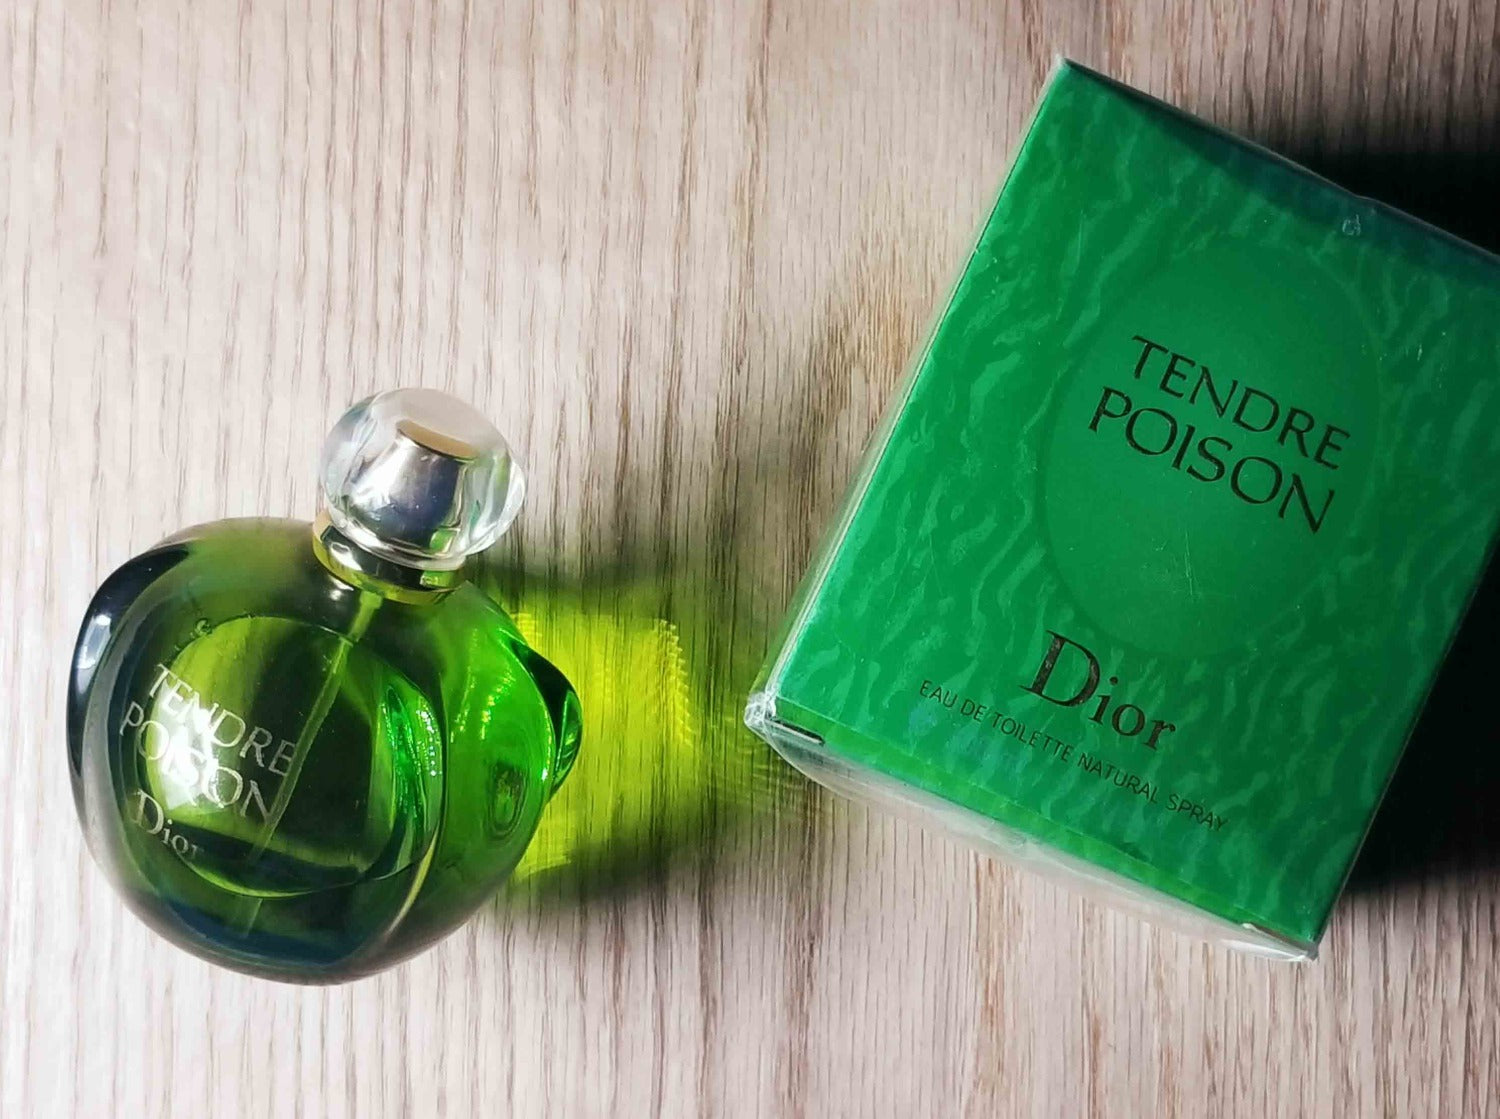 Tendre Poison by Christian Dior Women Eau De Toilette Spray 3.4 oz Unboxed  NEW